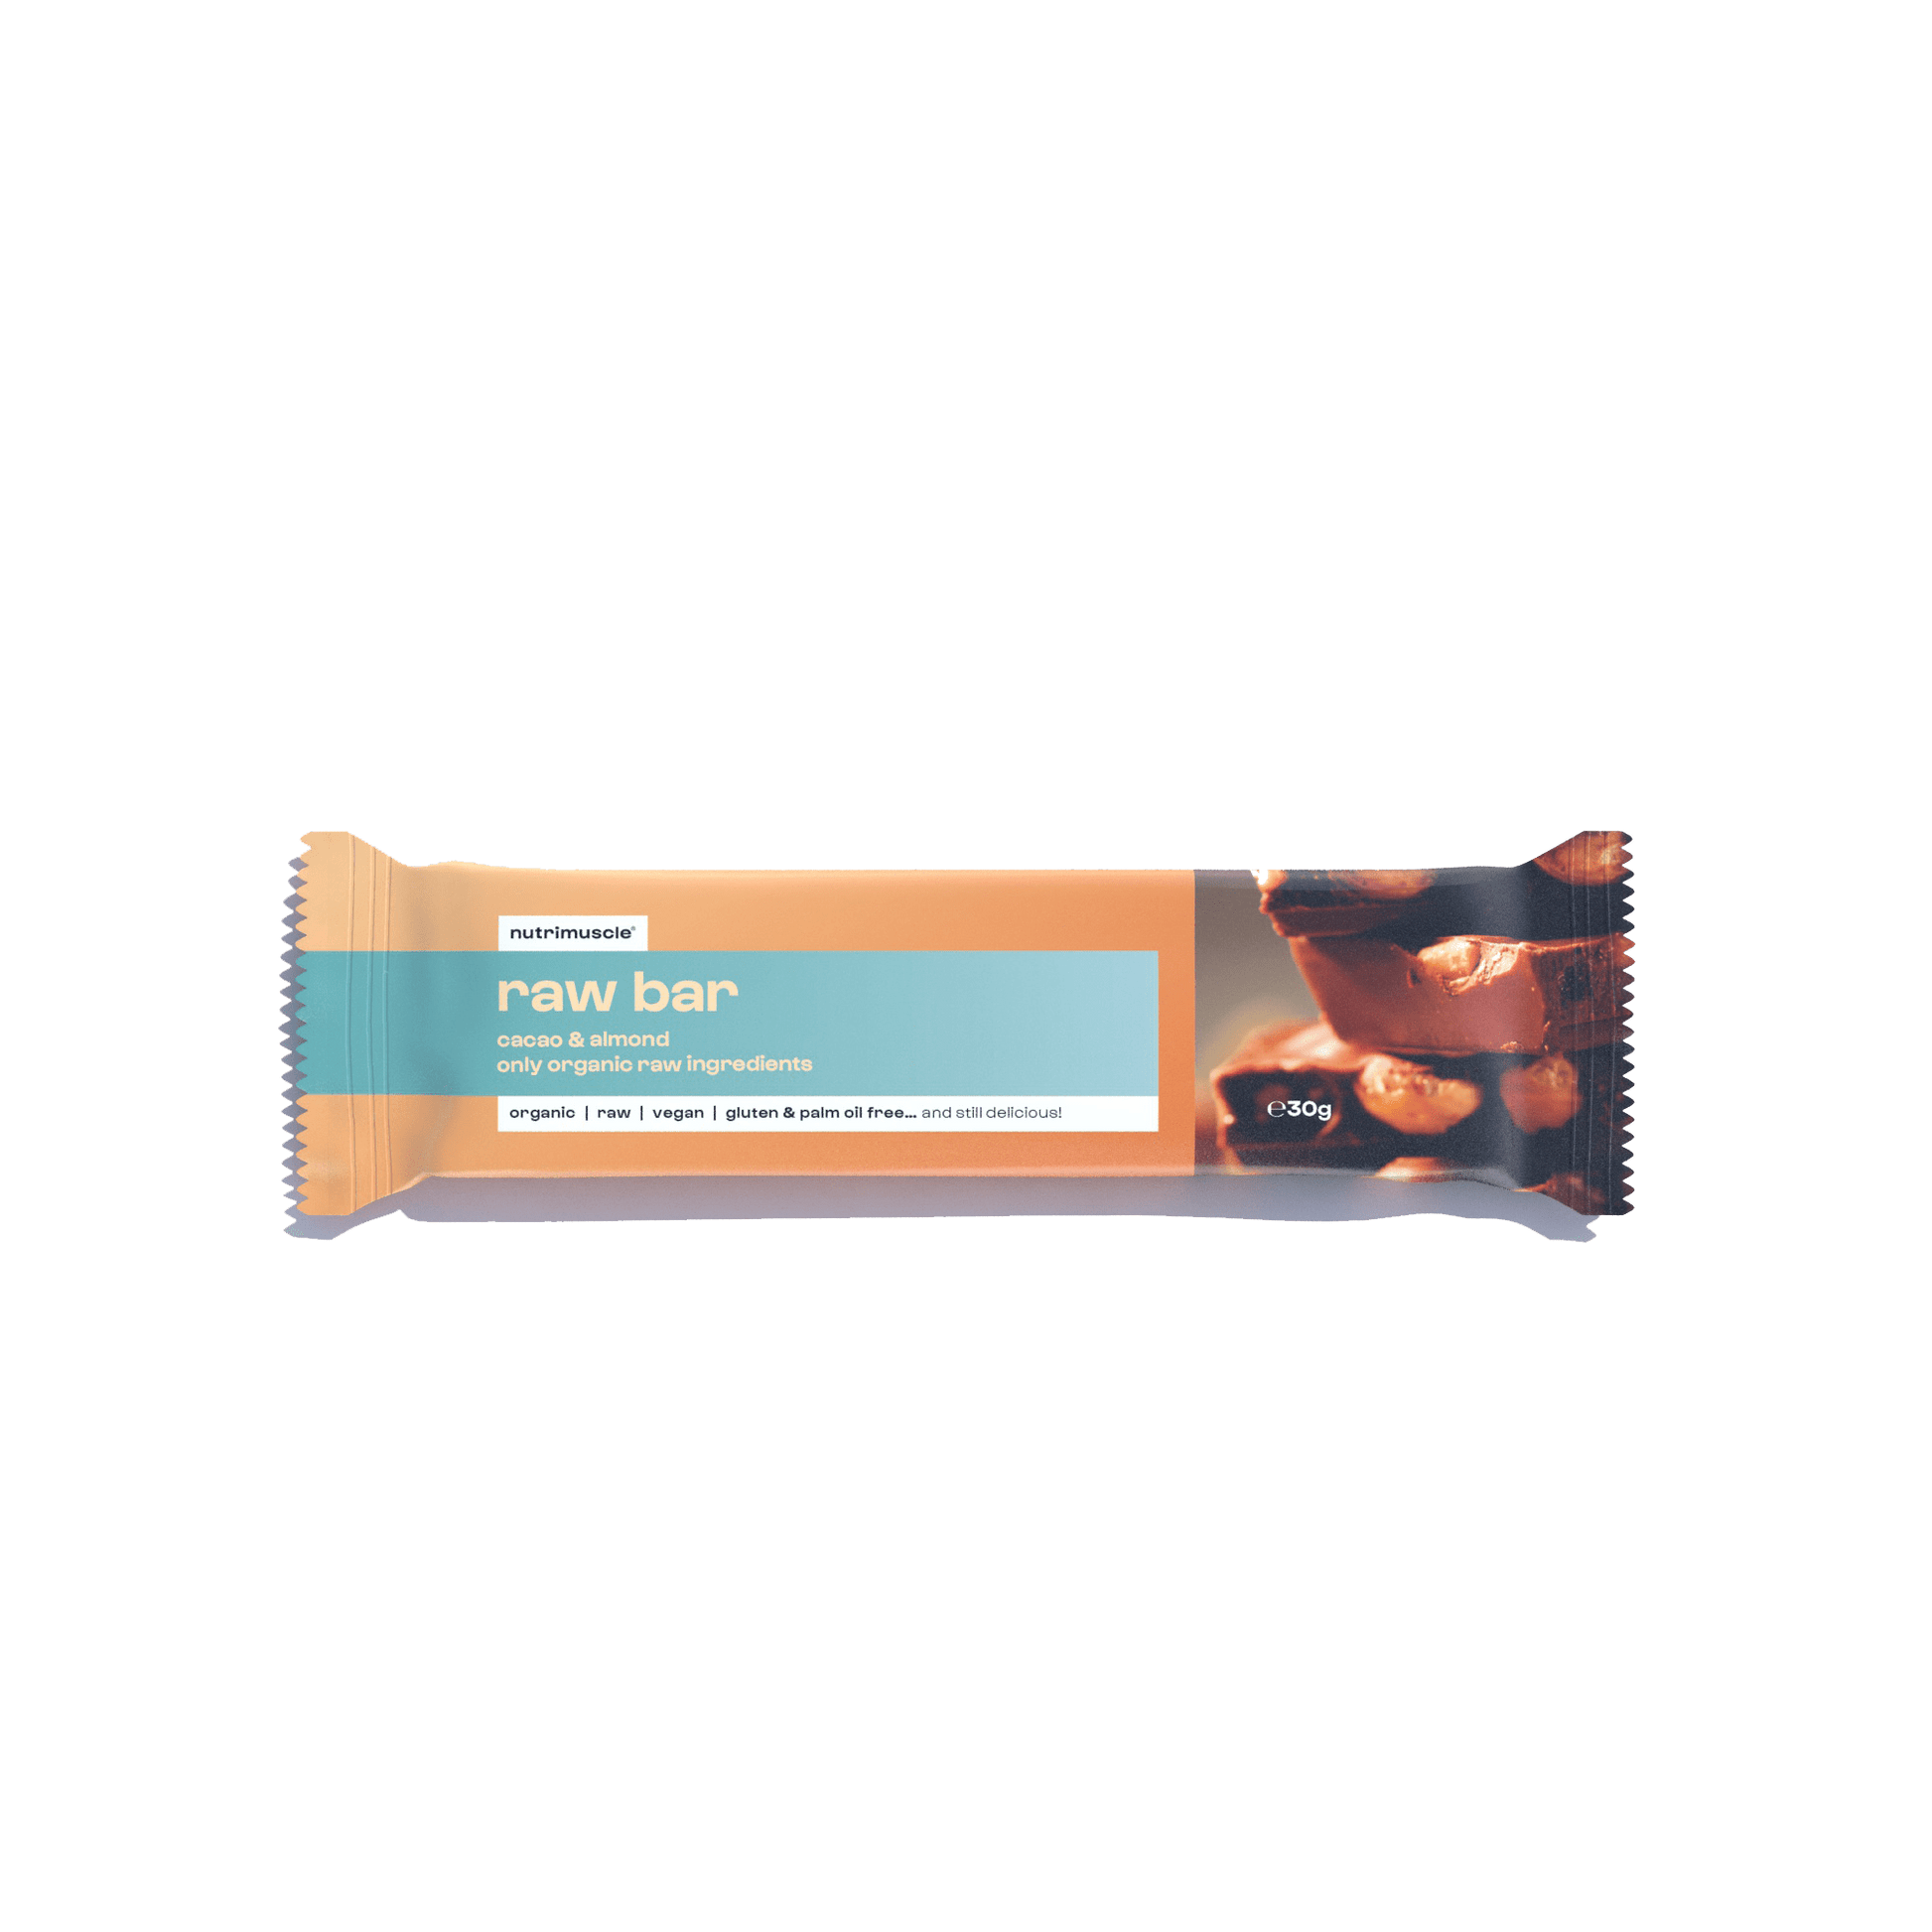 Nutrimuscle Glucides Chocolat & Amande / 1 barre Barre crue bio